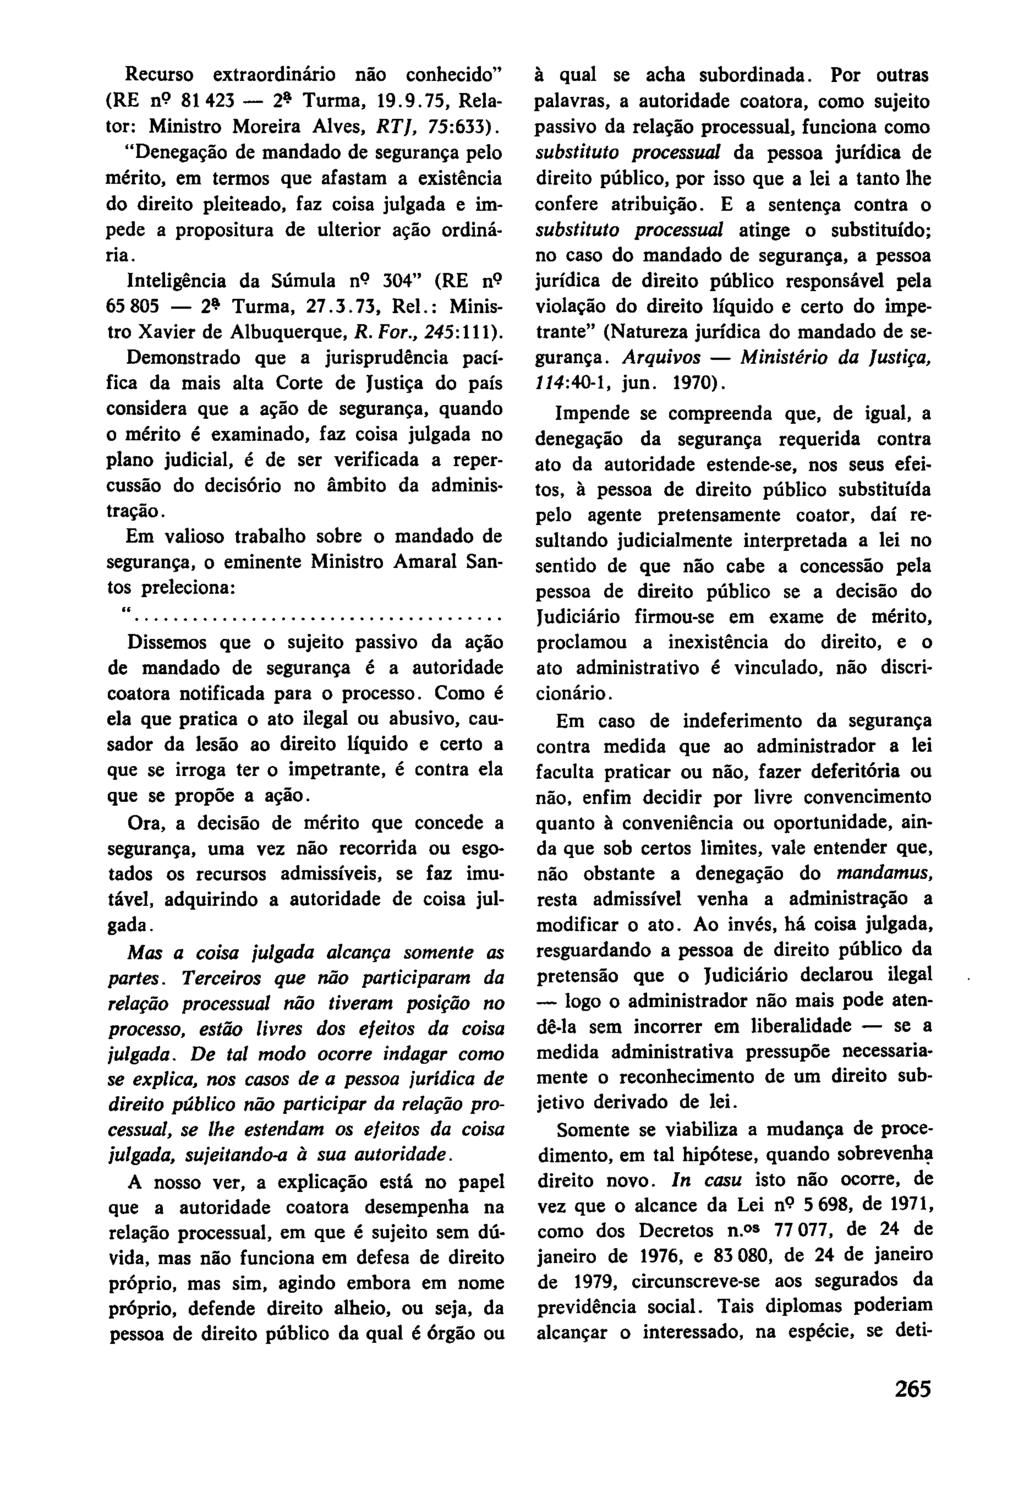 Recurso extraordinário não conhecido" (RE n9 81423-2~ Turma, 19.9.75, Relator: Ministro Moreira Alves, RT J, 75:633).